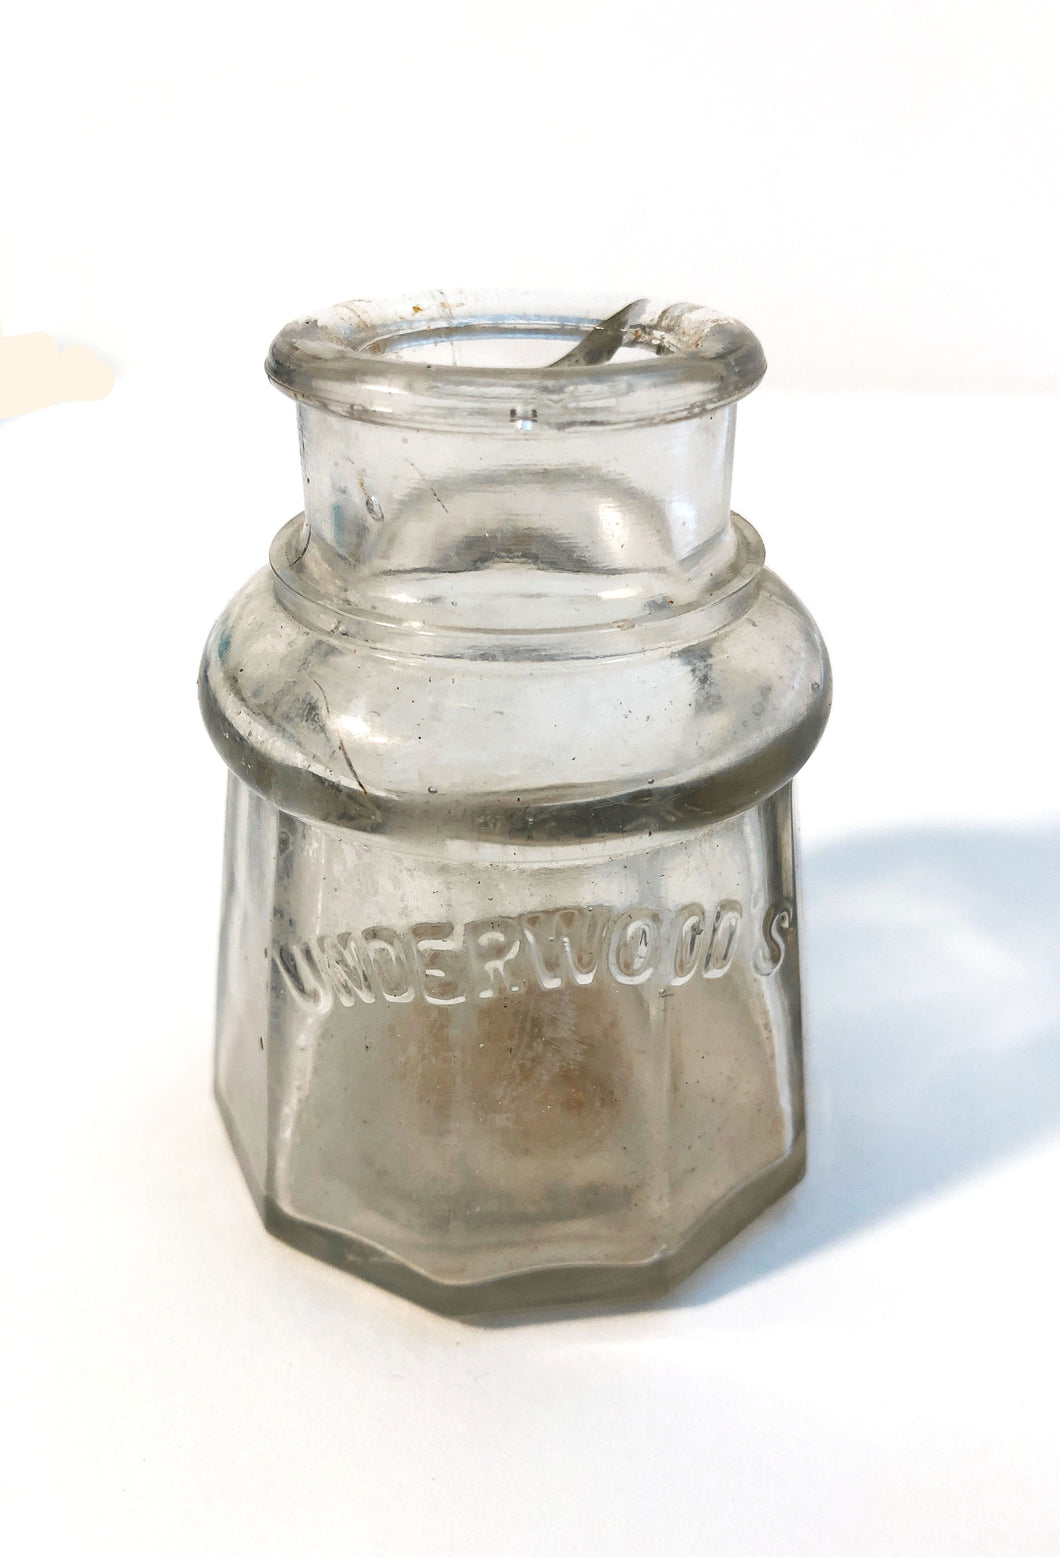 Ink Bottle, Underwood's, clear glass, empty